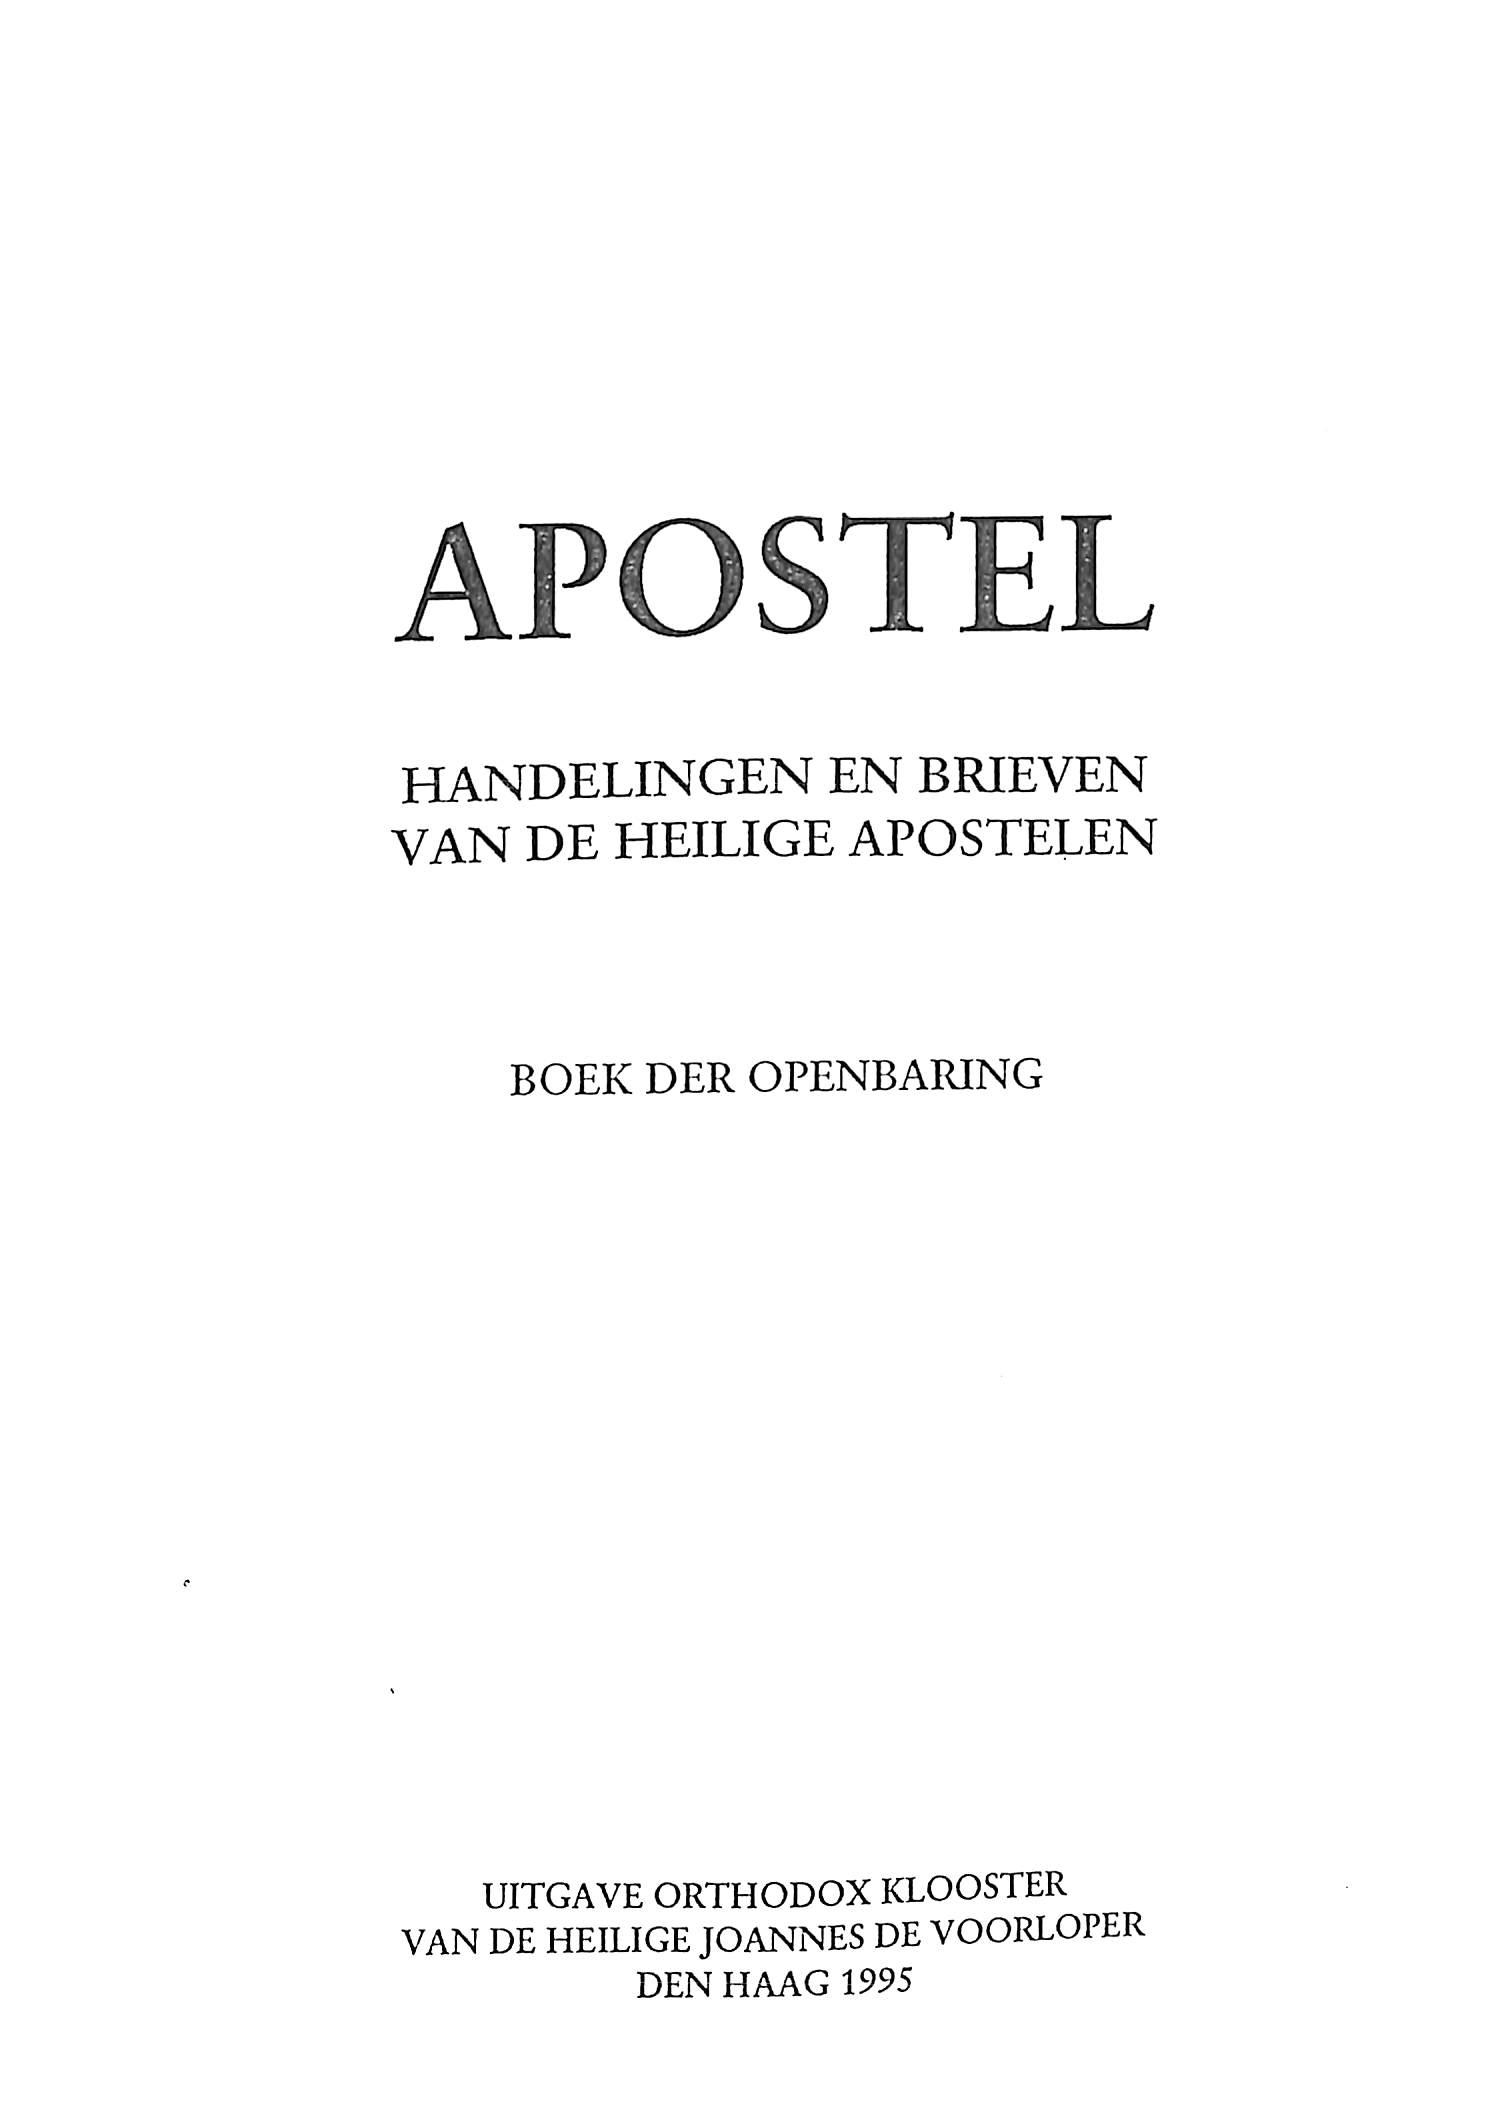 Apostel, handelingen en brieven van de heilige apostelen